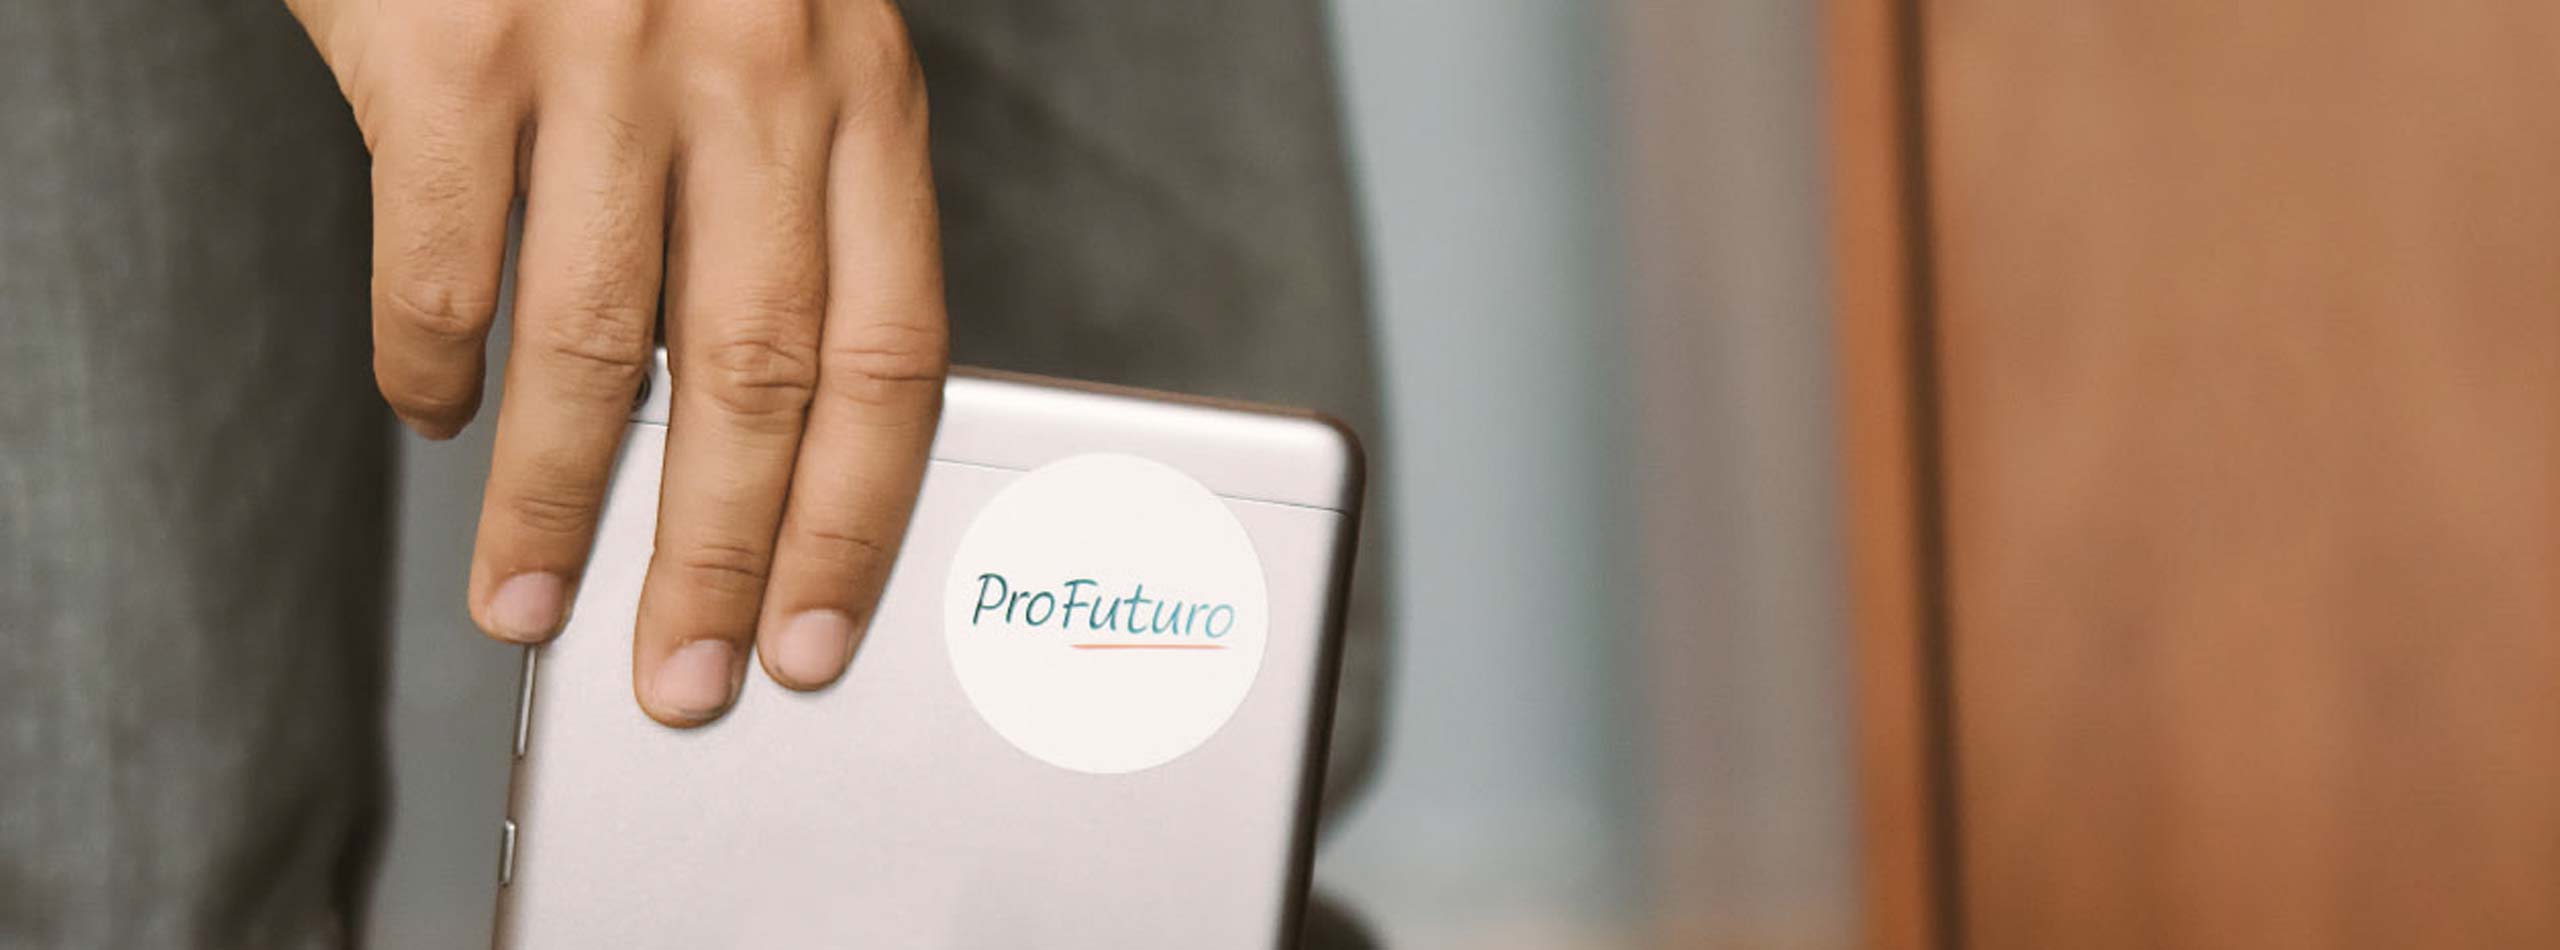 ProFuturo dona 10.000 tabletas para personas en situación vulnerable